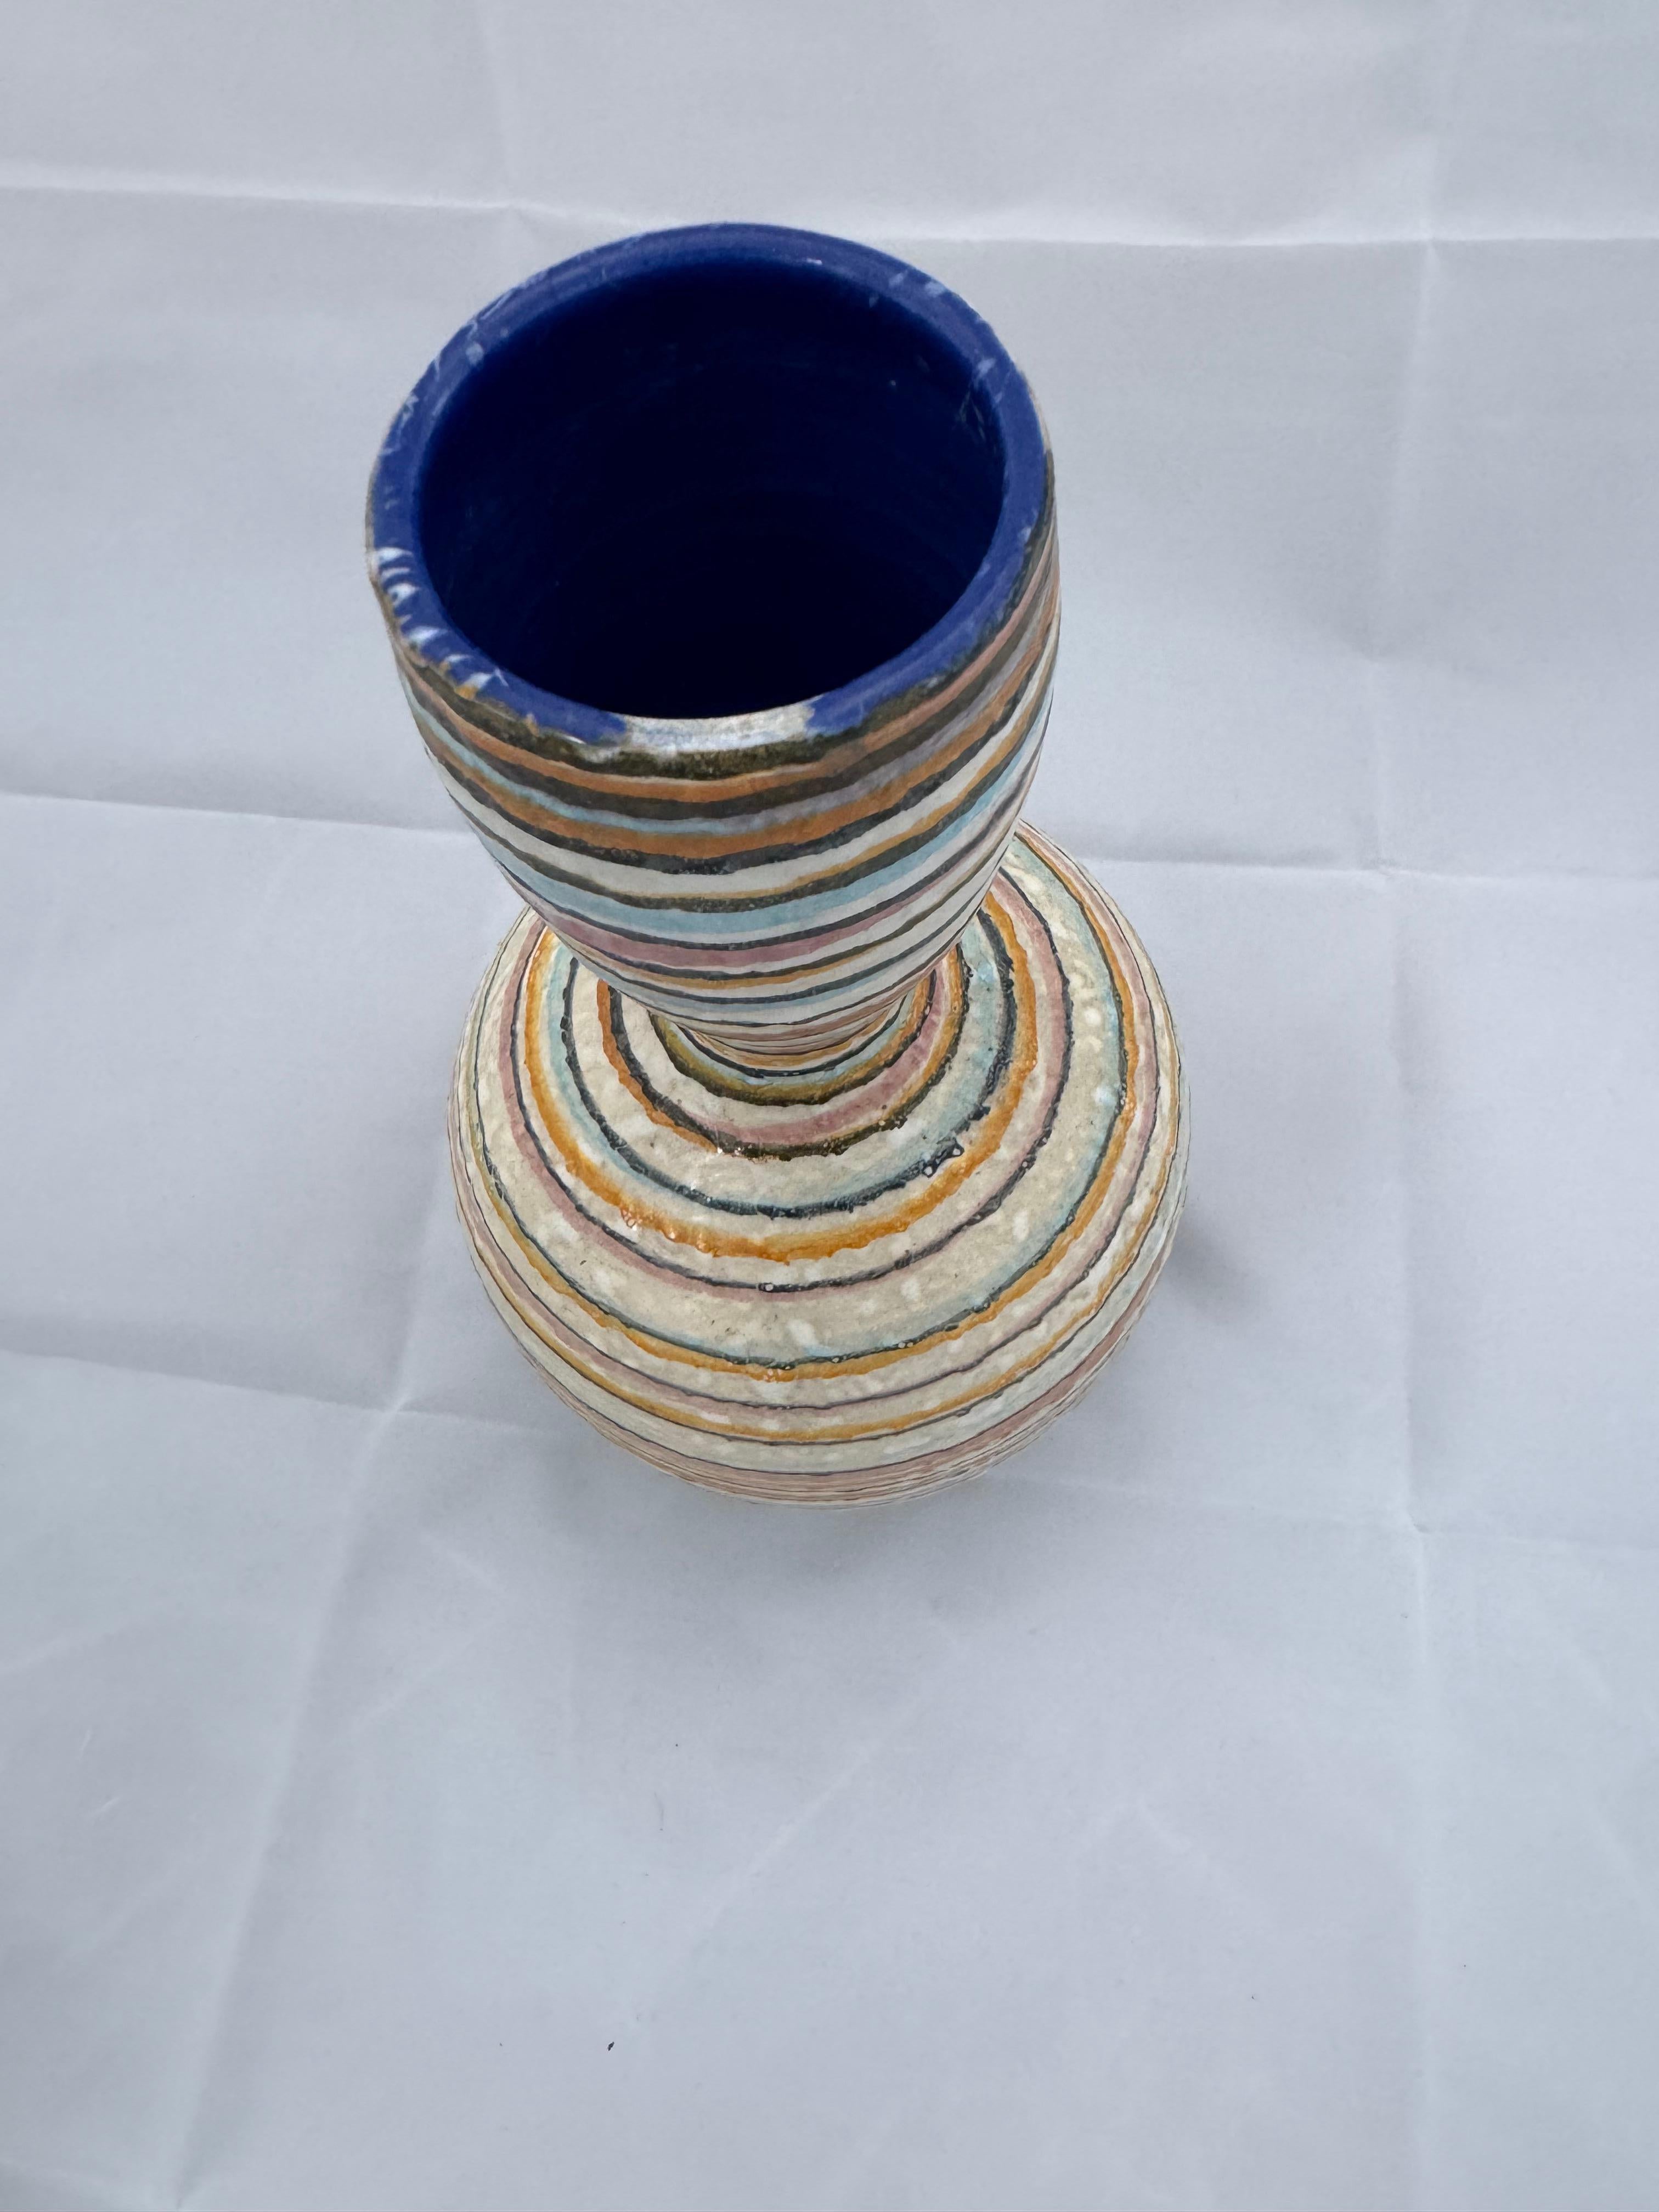 Handgefertigte Studio-Keramikvase mit bunten blauen, gelben, weißen, schwarzen, braunen und orangefarbenen Streifen. Dieses an Fantoni-Töpferware erinnernde Stück ist ein echter Blickfang. Der Rand weist eine leichte Einkerbung auf, die tatsächlich